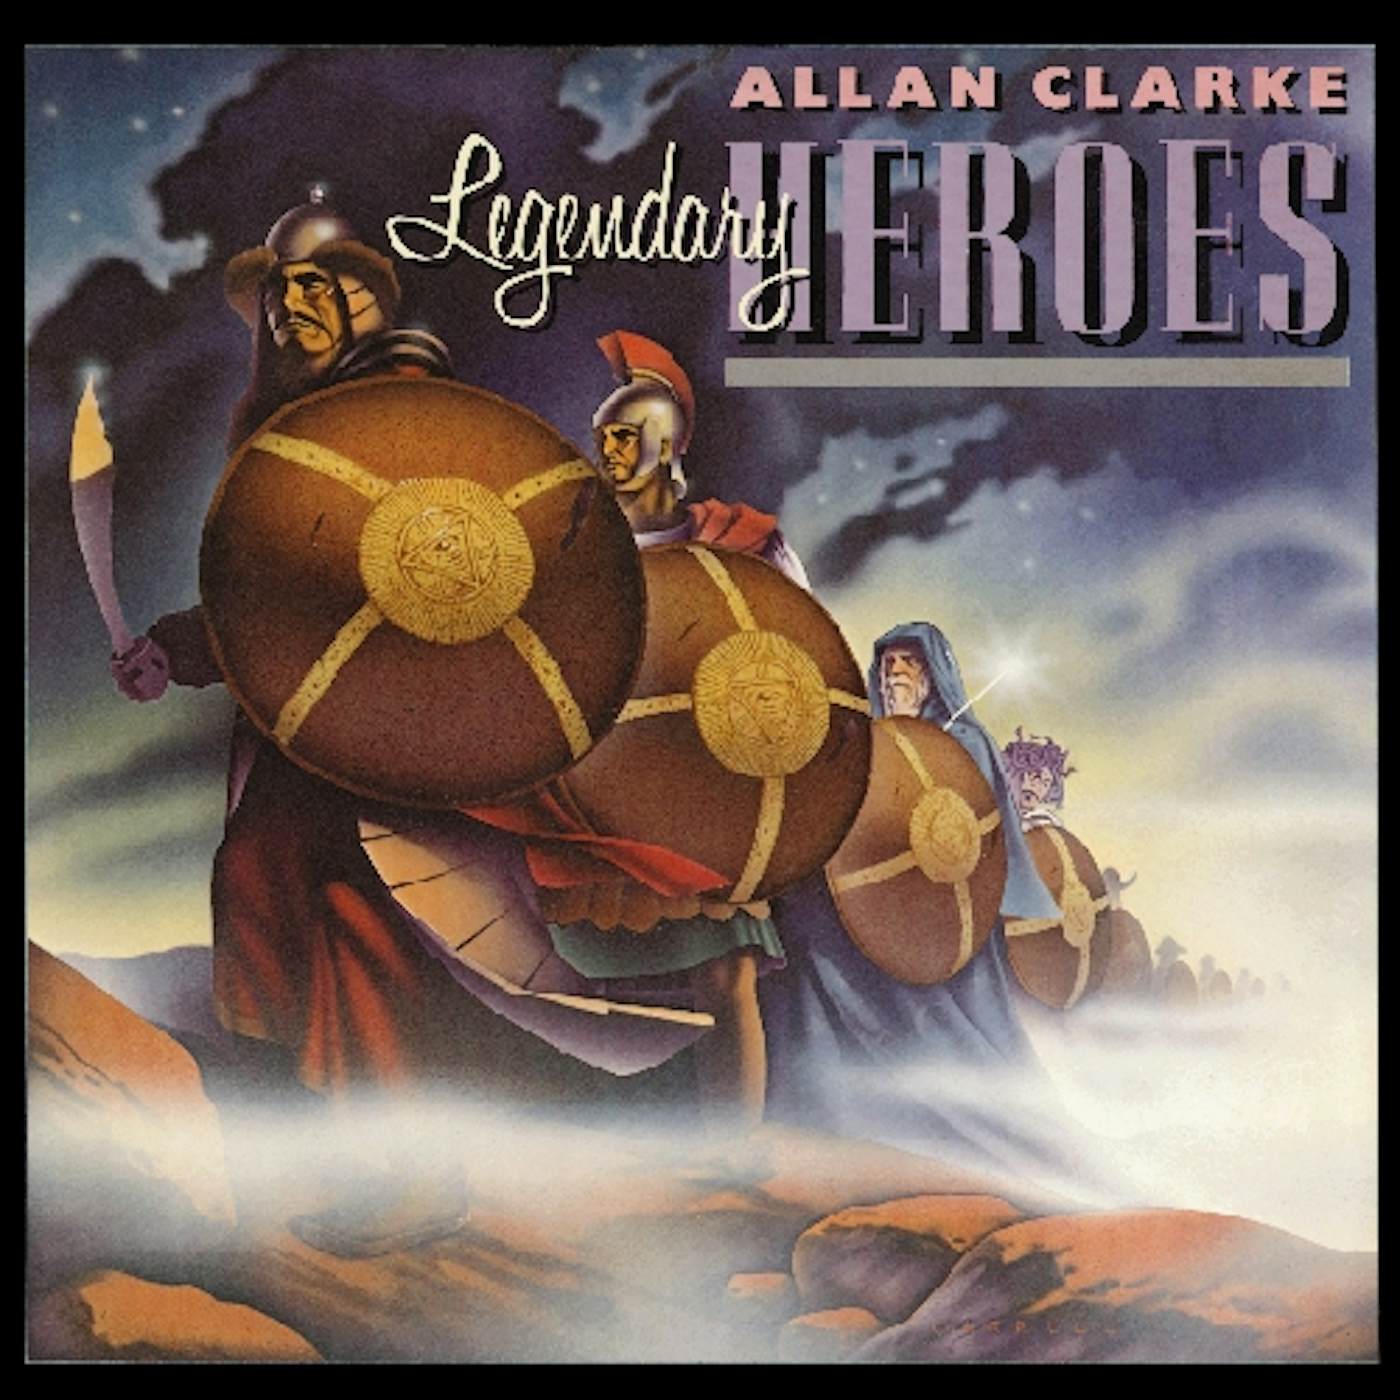 Allan Clarke LEGENDARY HEROES CD